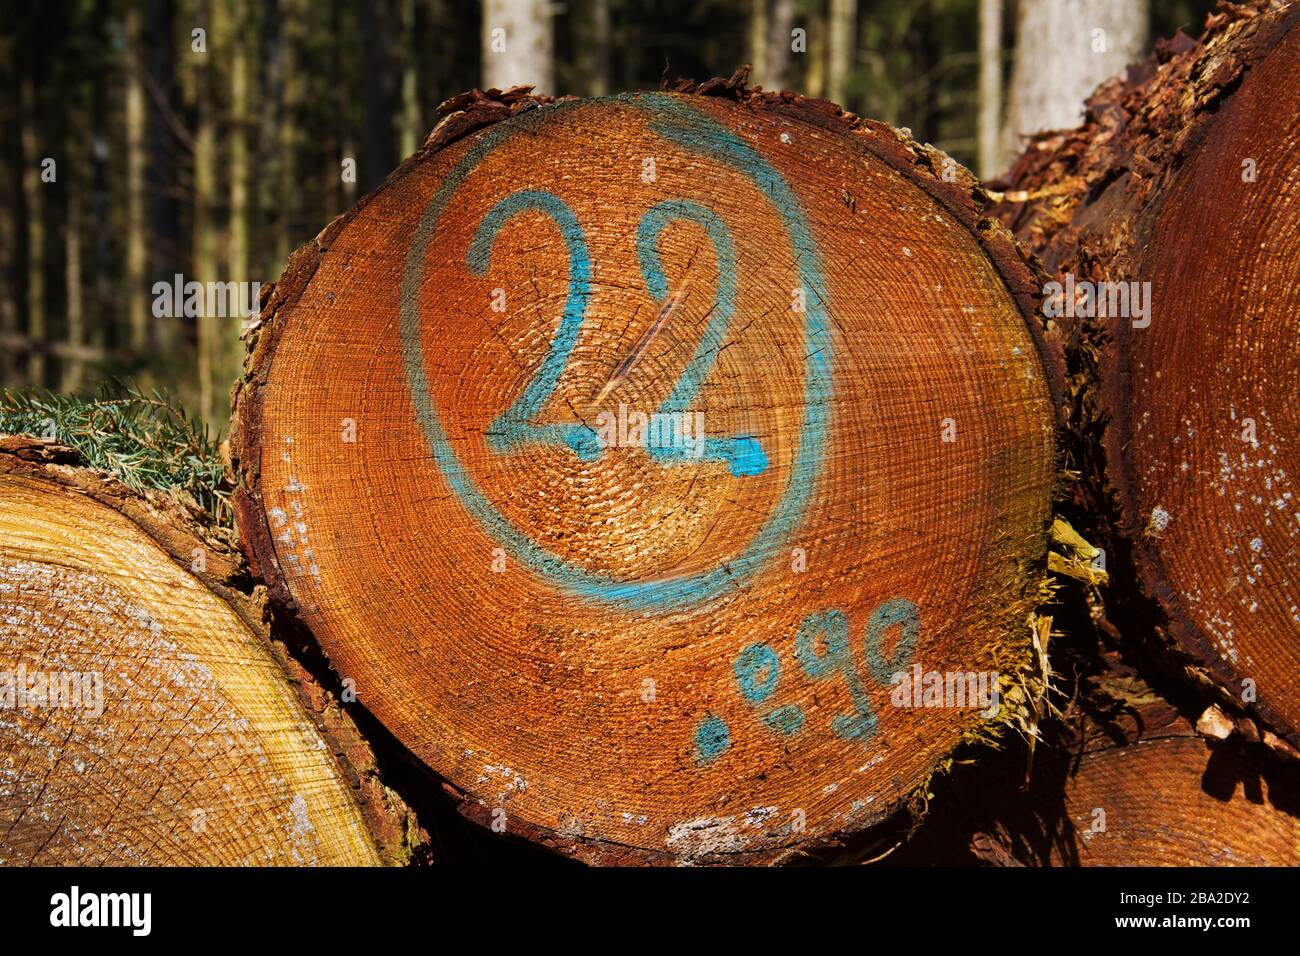 Pila de tallos de árbol, uno de ellos marcado en azul con el número 22 Foto de stock